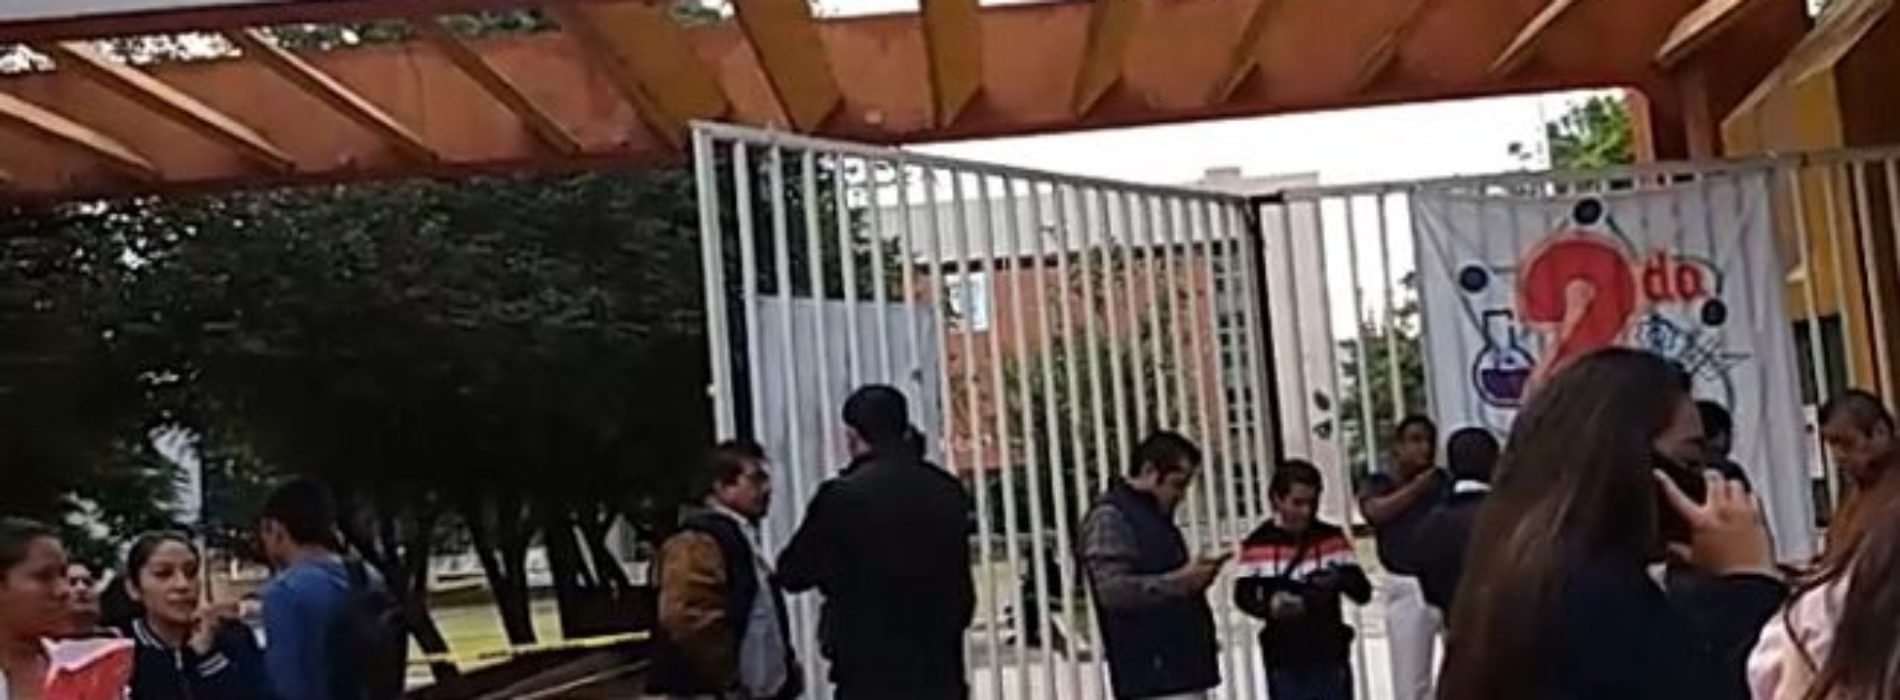 Stauo protesta en Ciudad Universitaria aunque integrantes de
Derecho también lo llevan a cabo